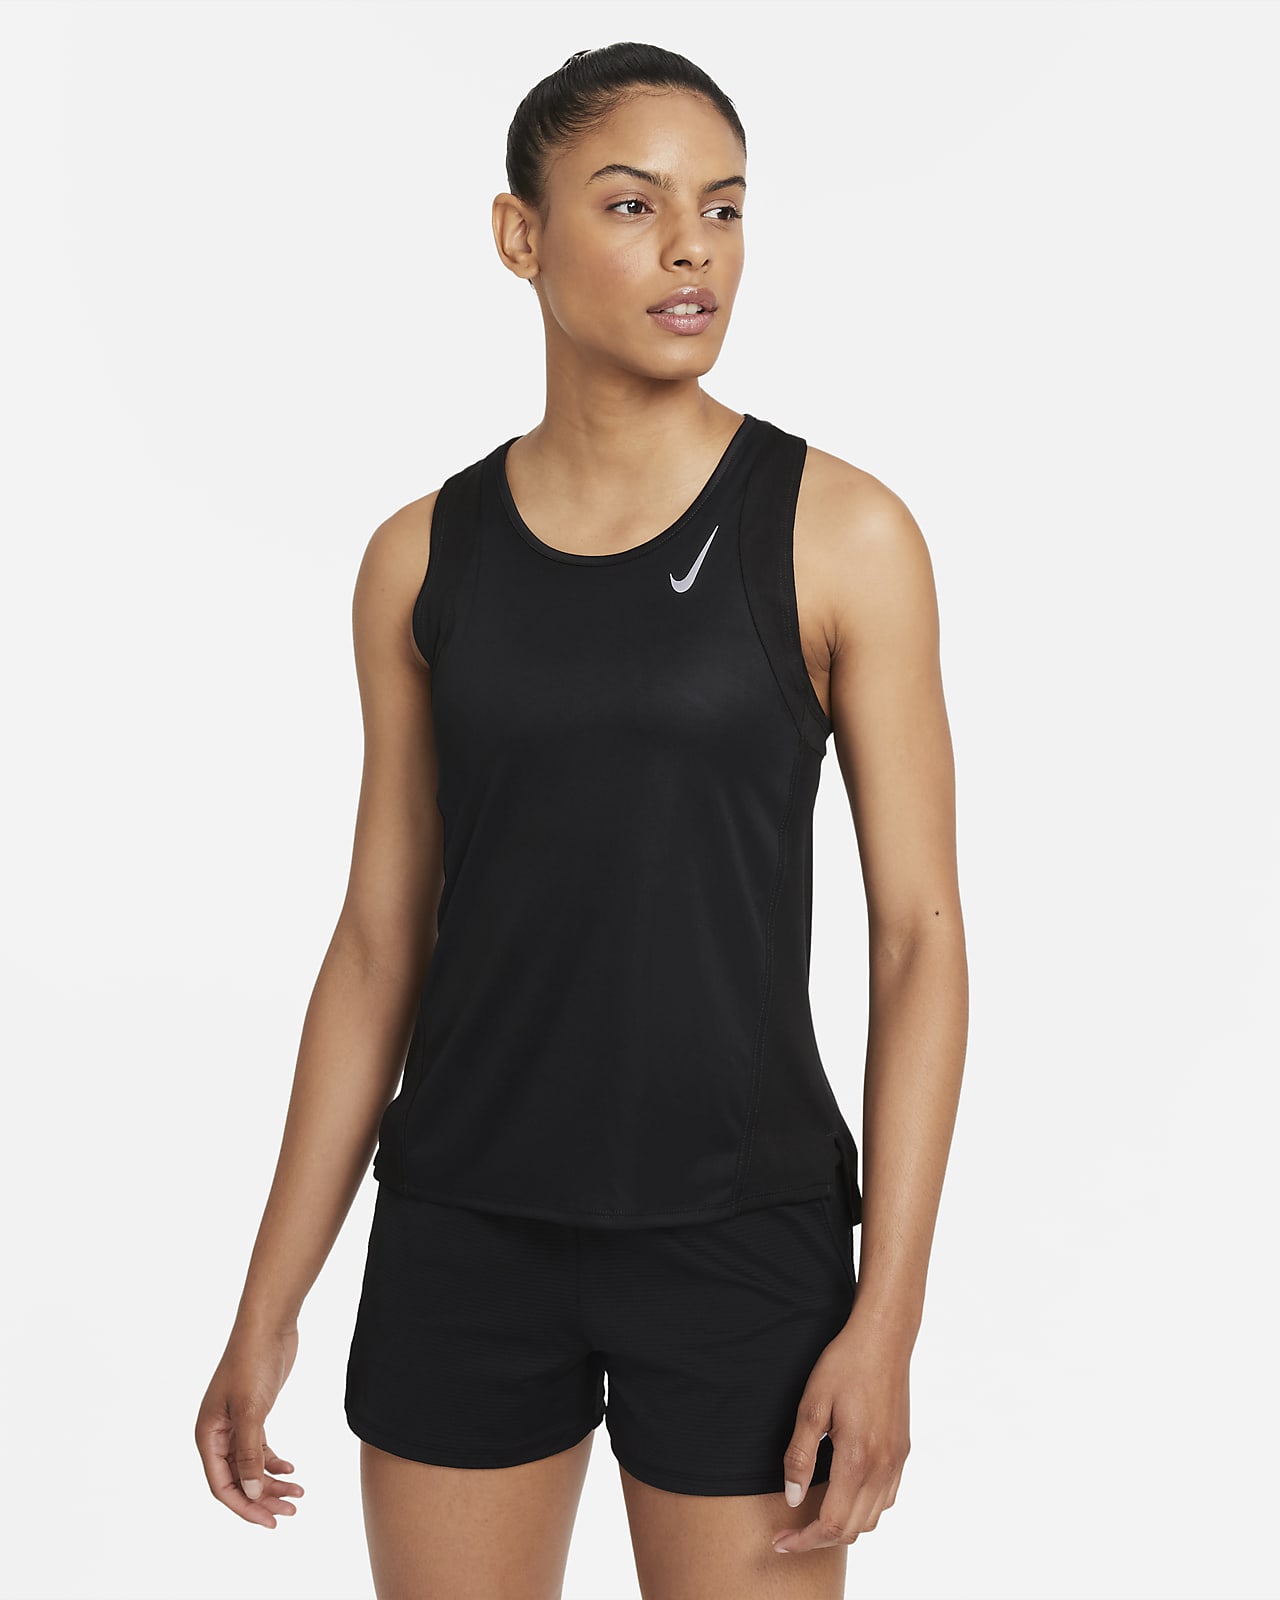 เสื้อกล้ามวิ่งผู้หญิง Nike Dri-FIT Race